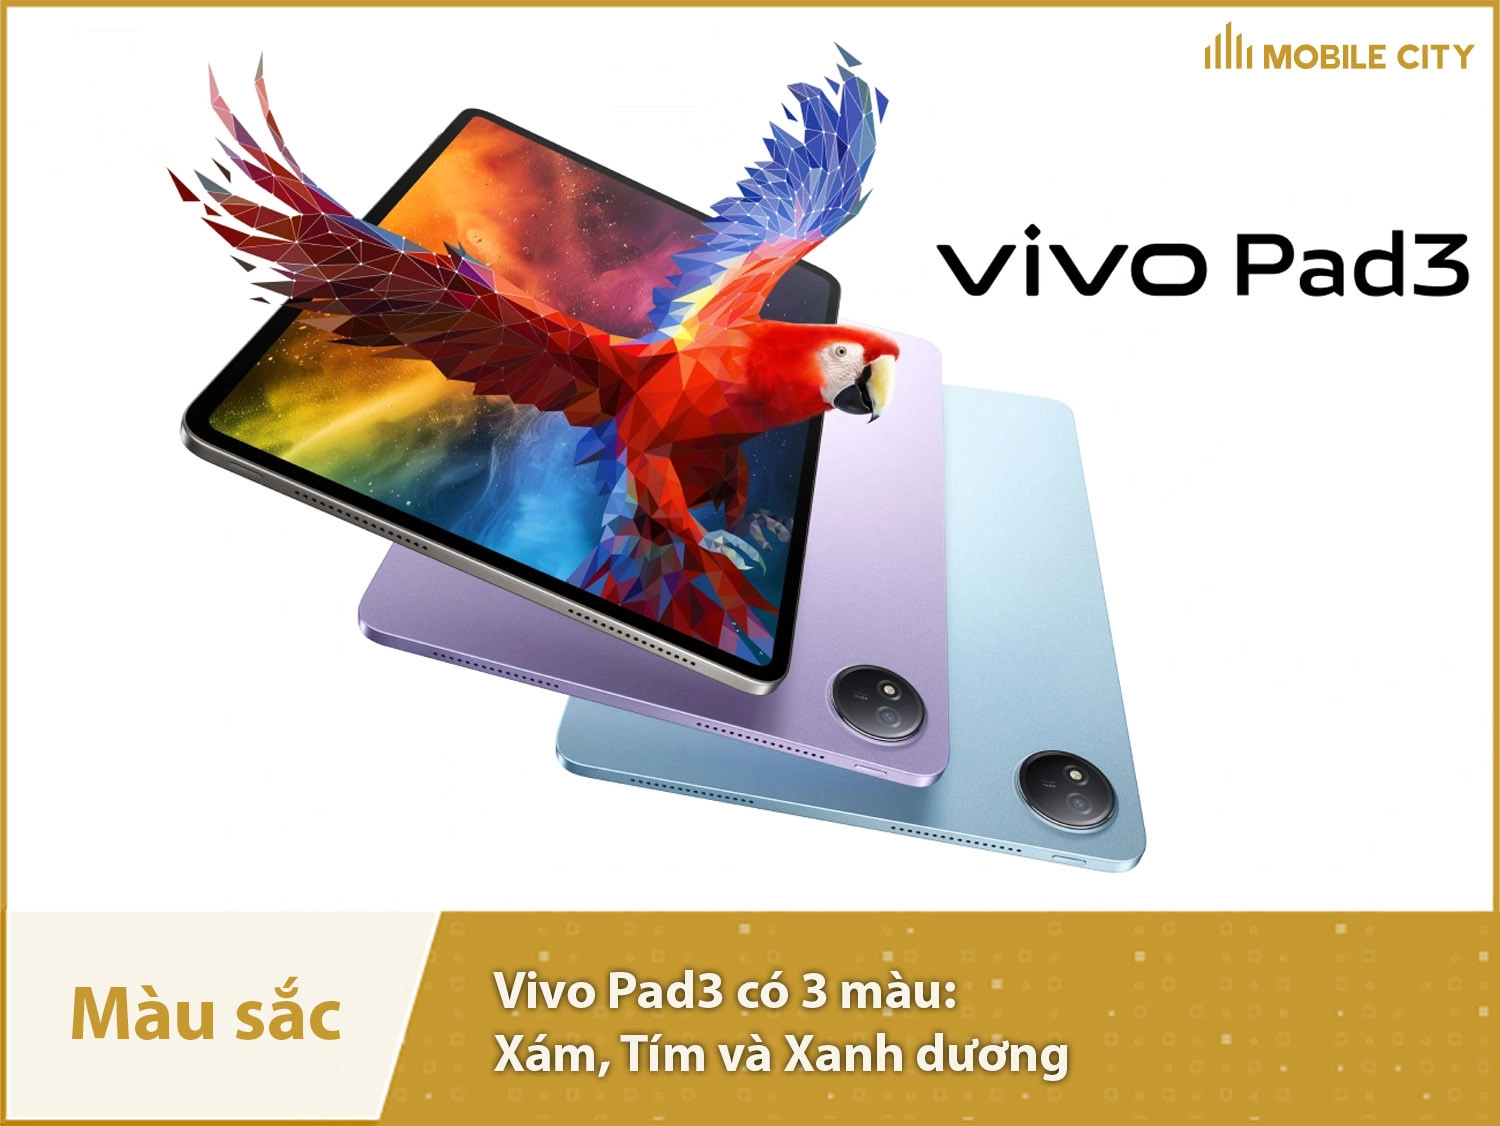 Vivo Pad3 cung cấp 3 màu: Xám, Tím và Xanh dương